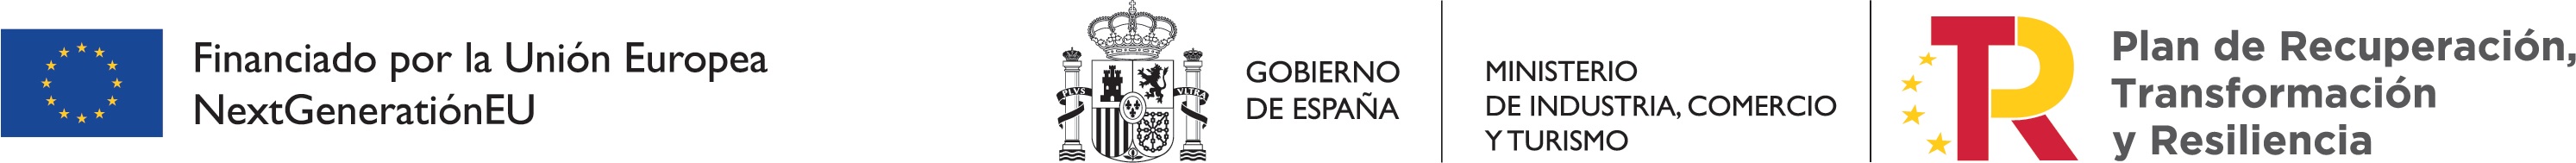 Logotipo administraciones